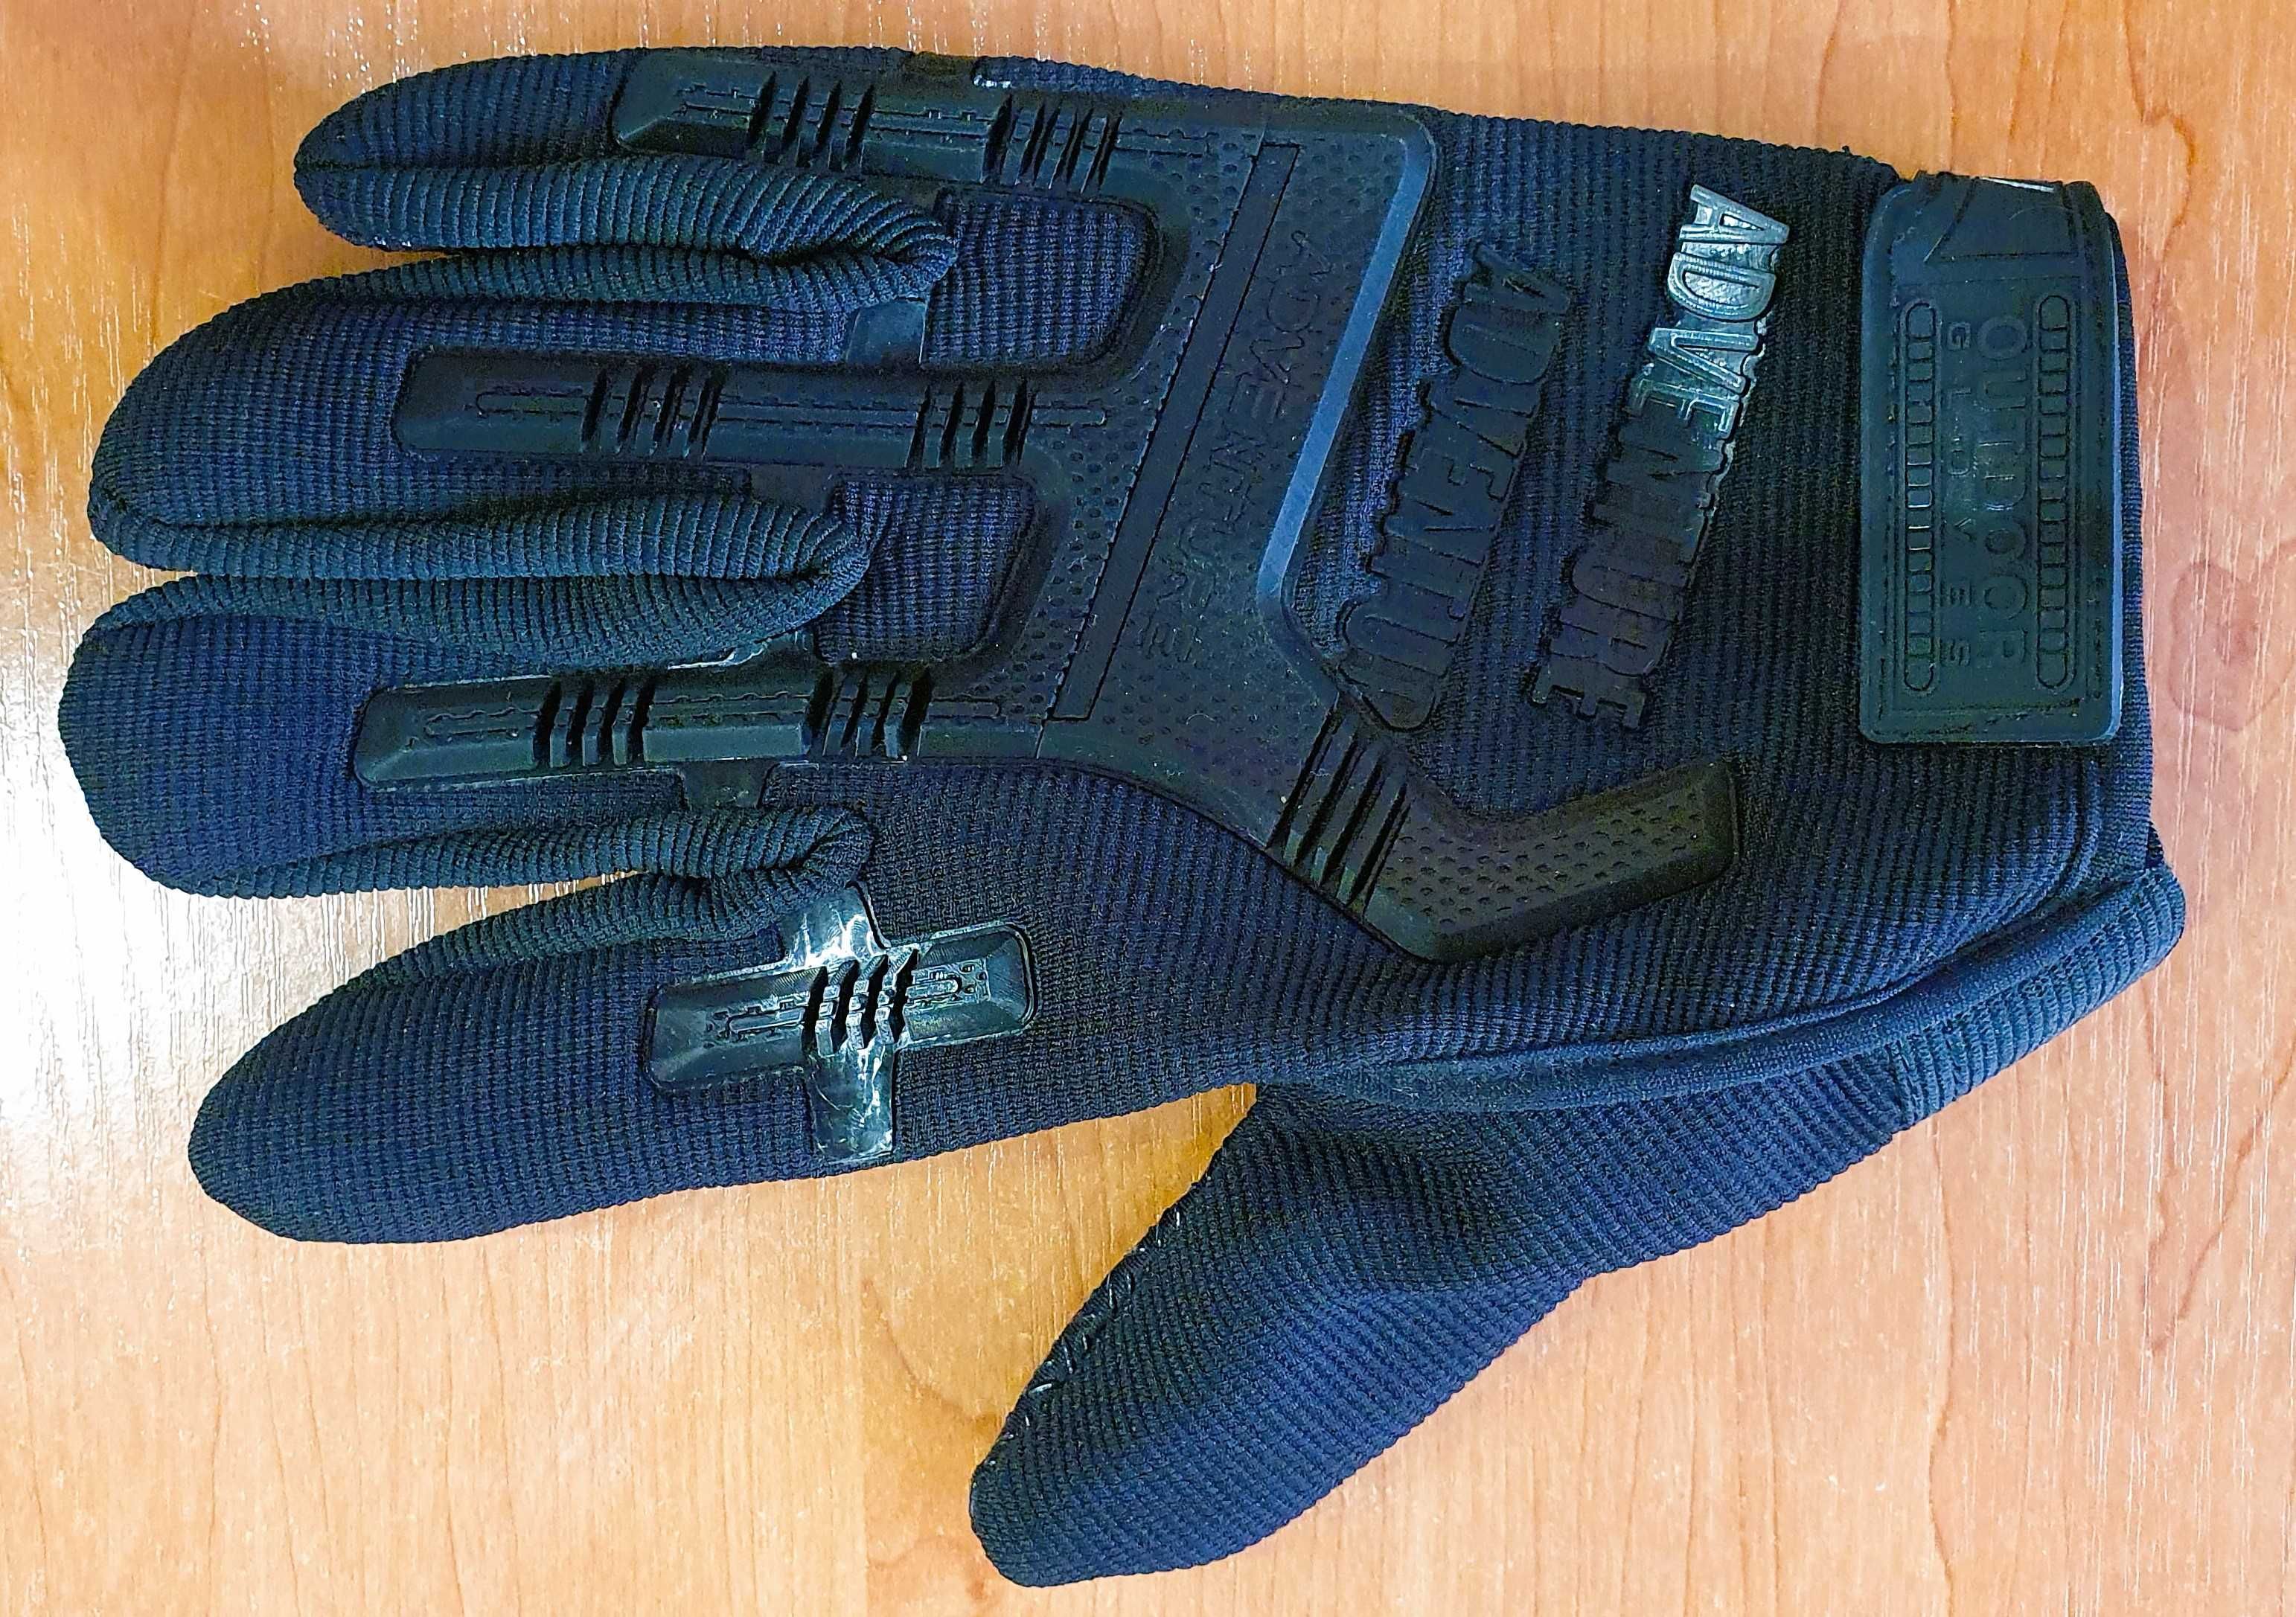 Rękawice outdoorowe, taktyczne, adventure gloves.